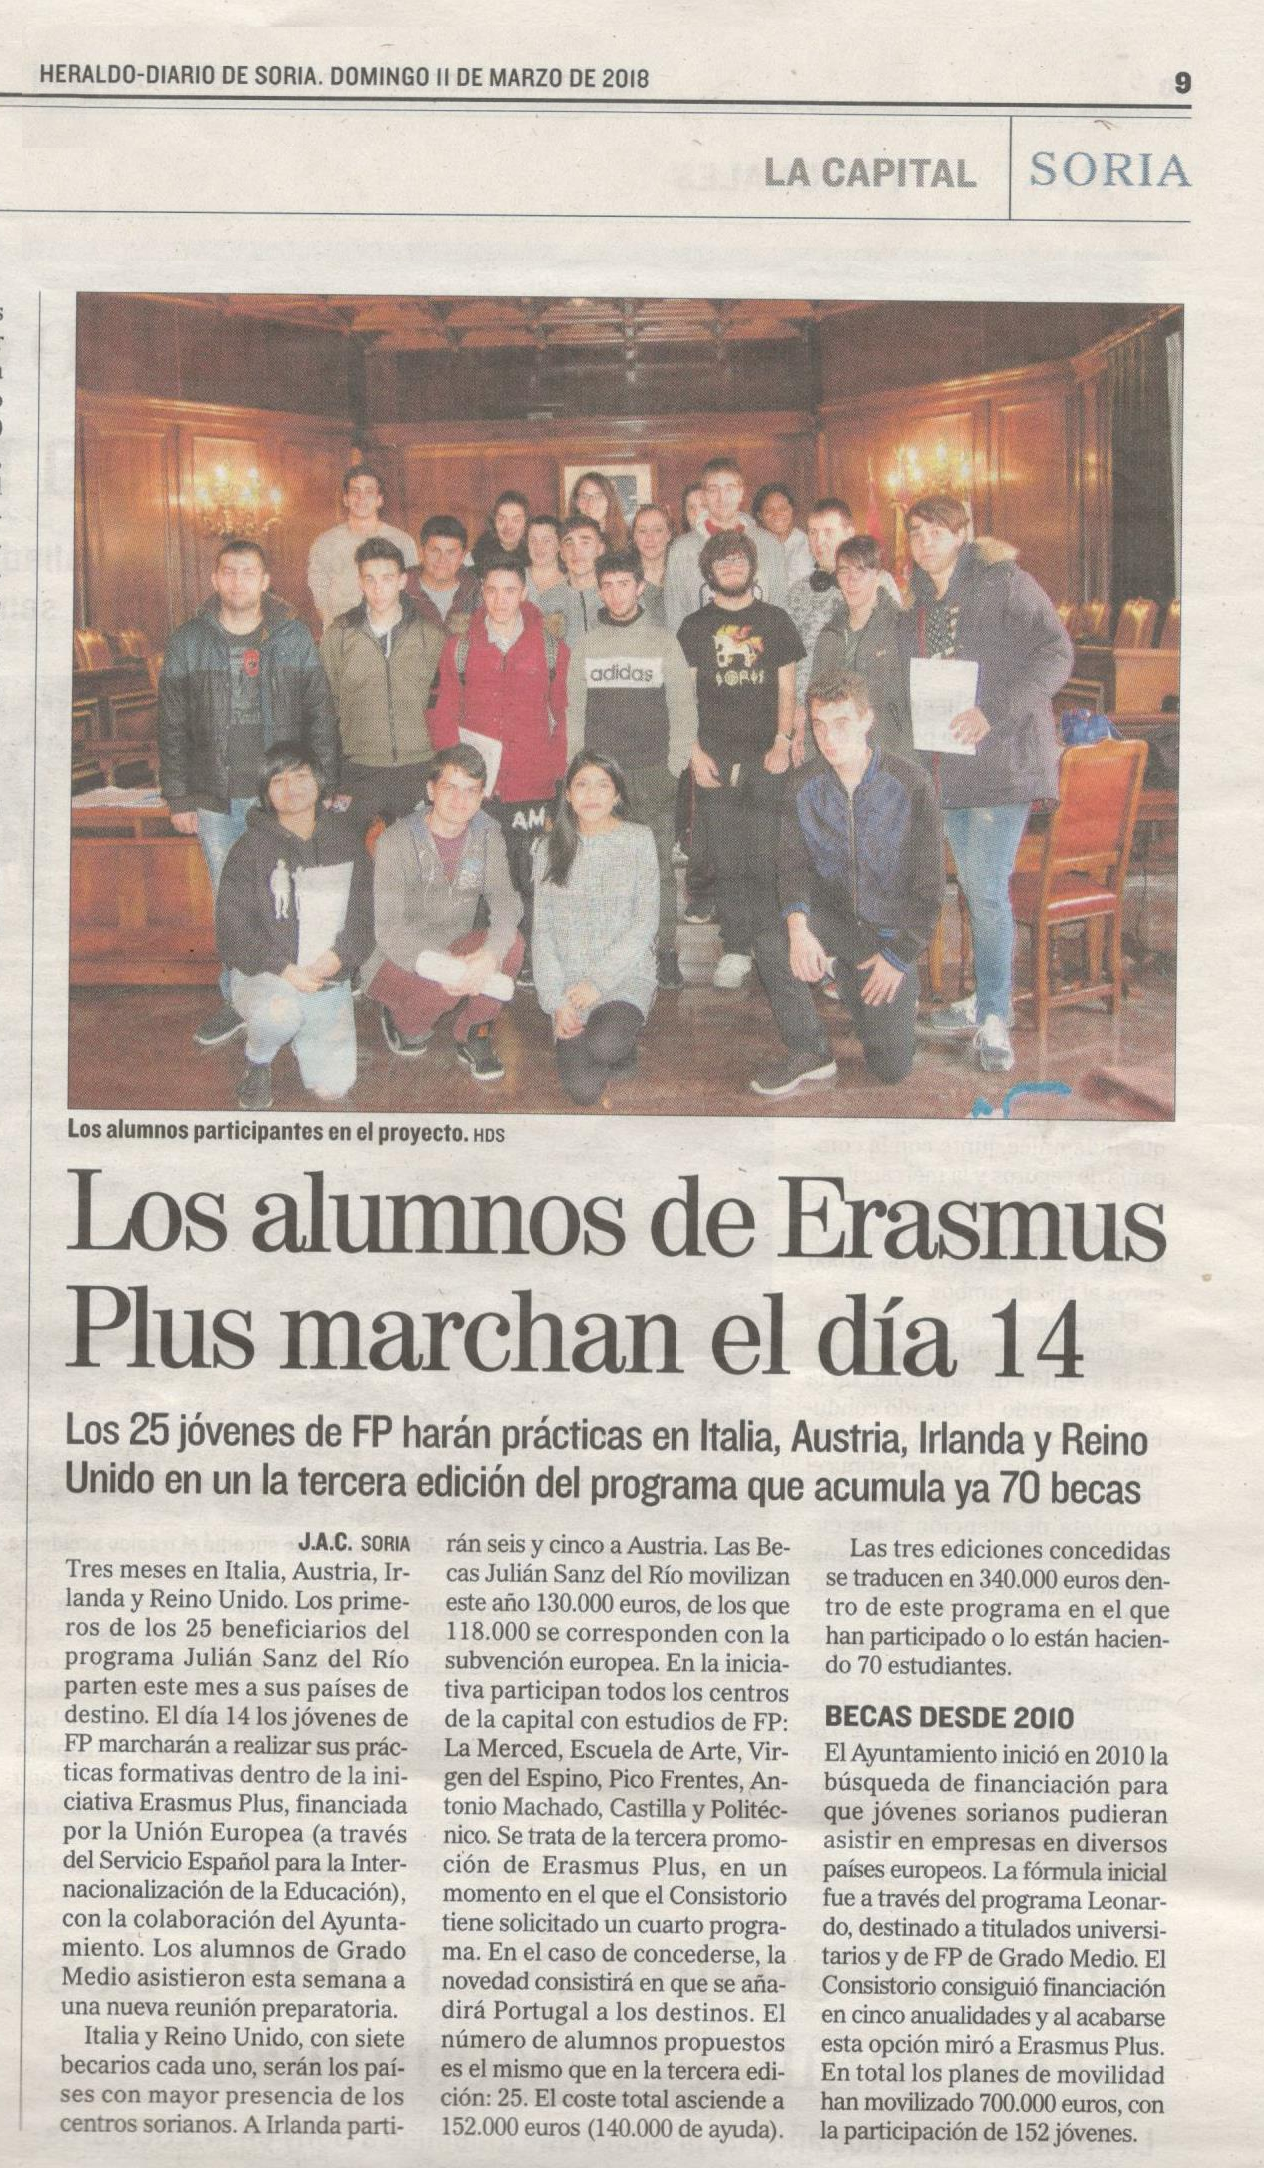 2018-03-11 Se Marchan Erasmus+. Articulo Heraldo de Soria